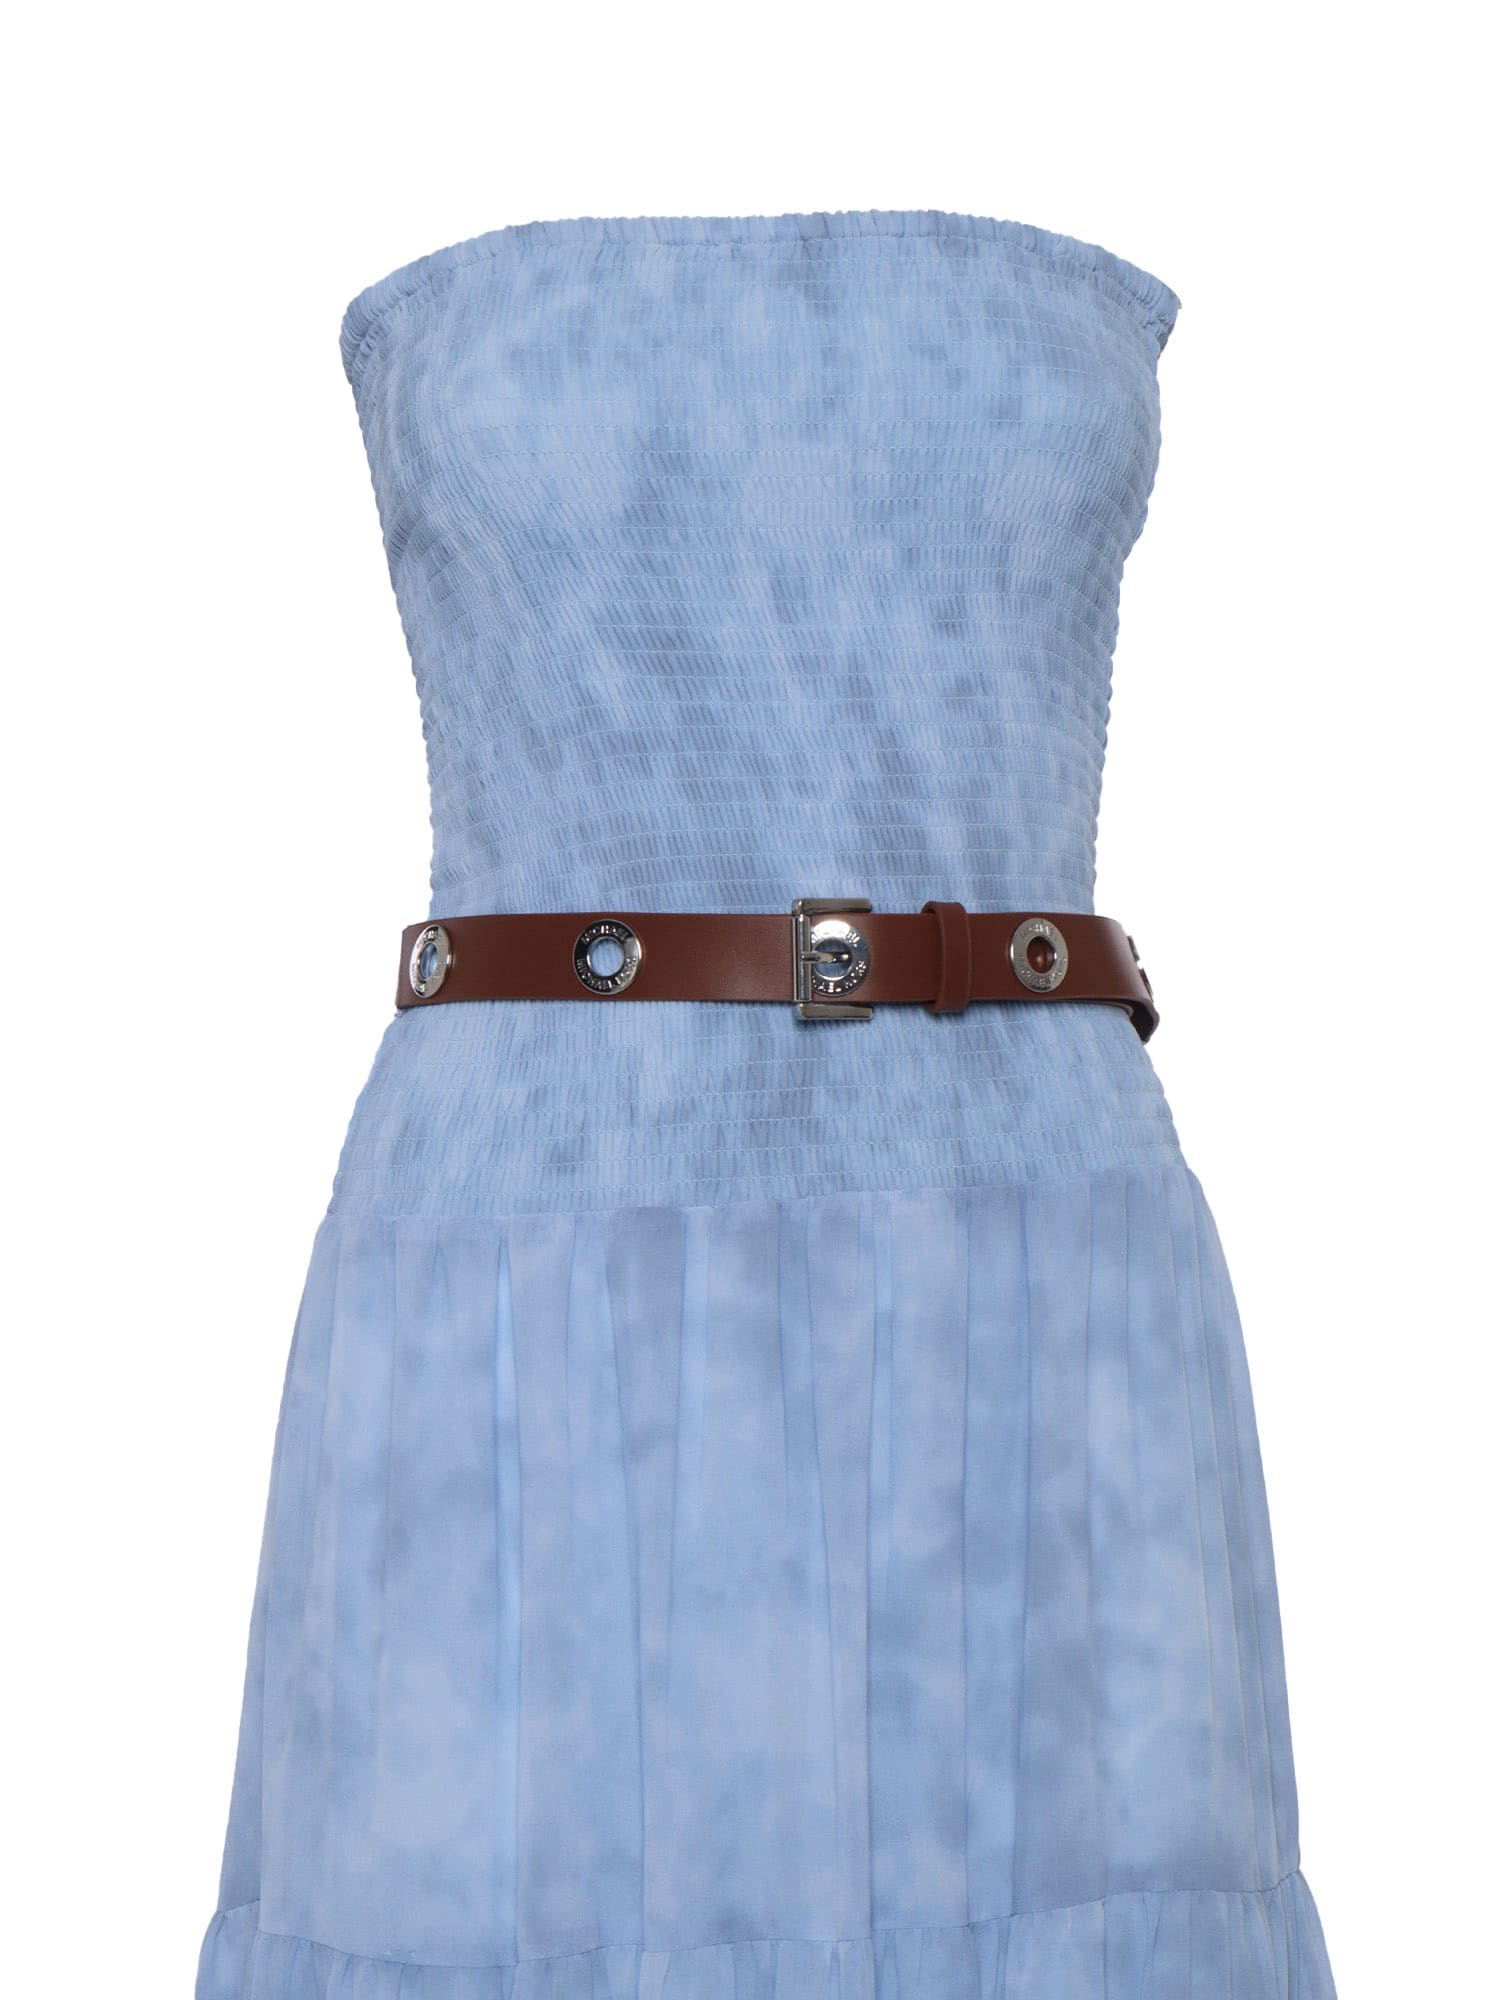 Shop Michael Kors Sunbleach Light Blue Dress